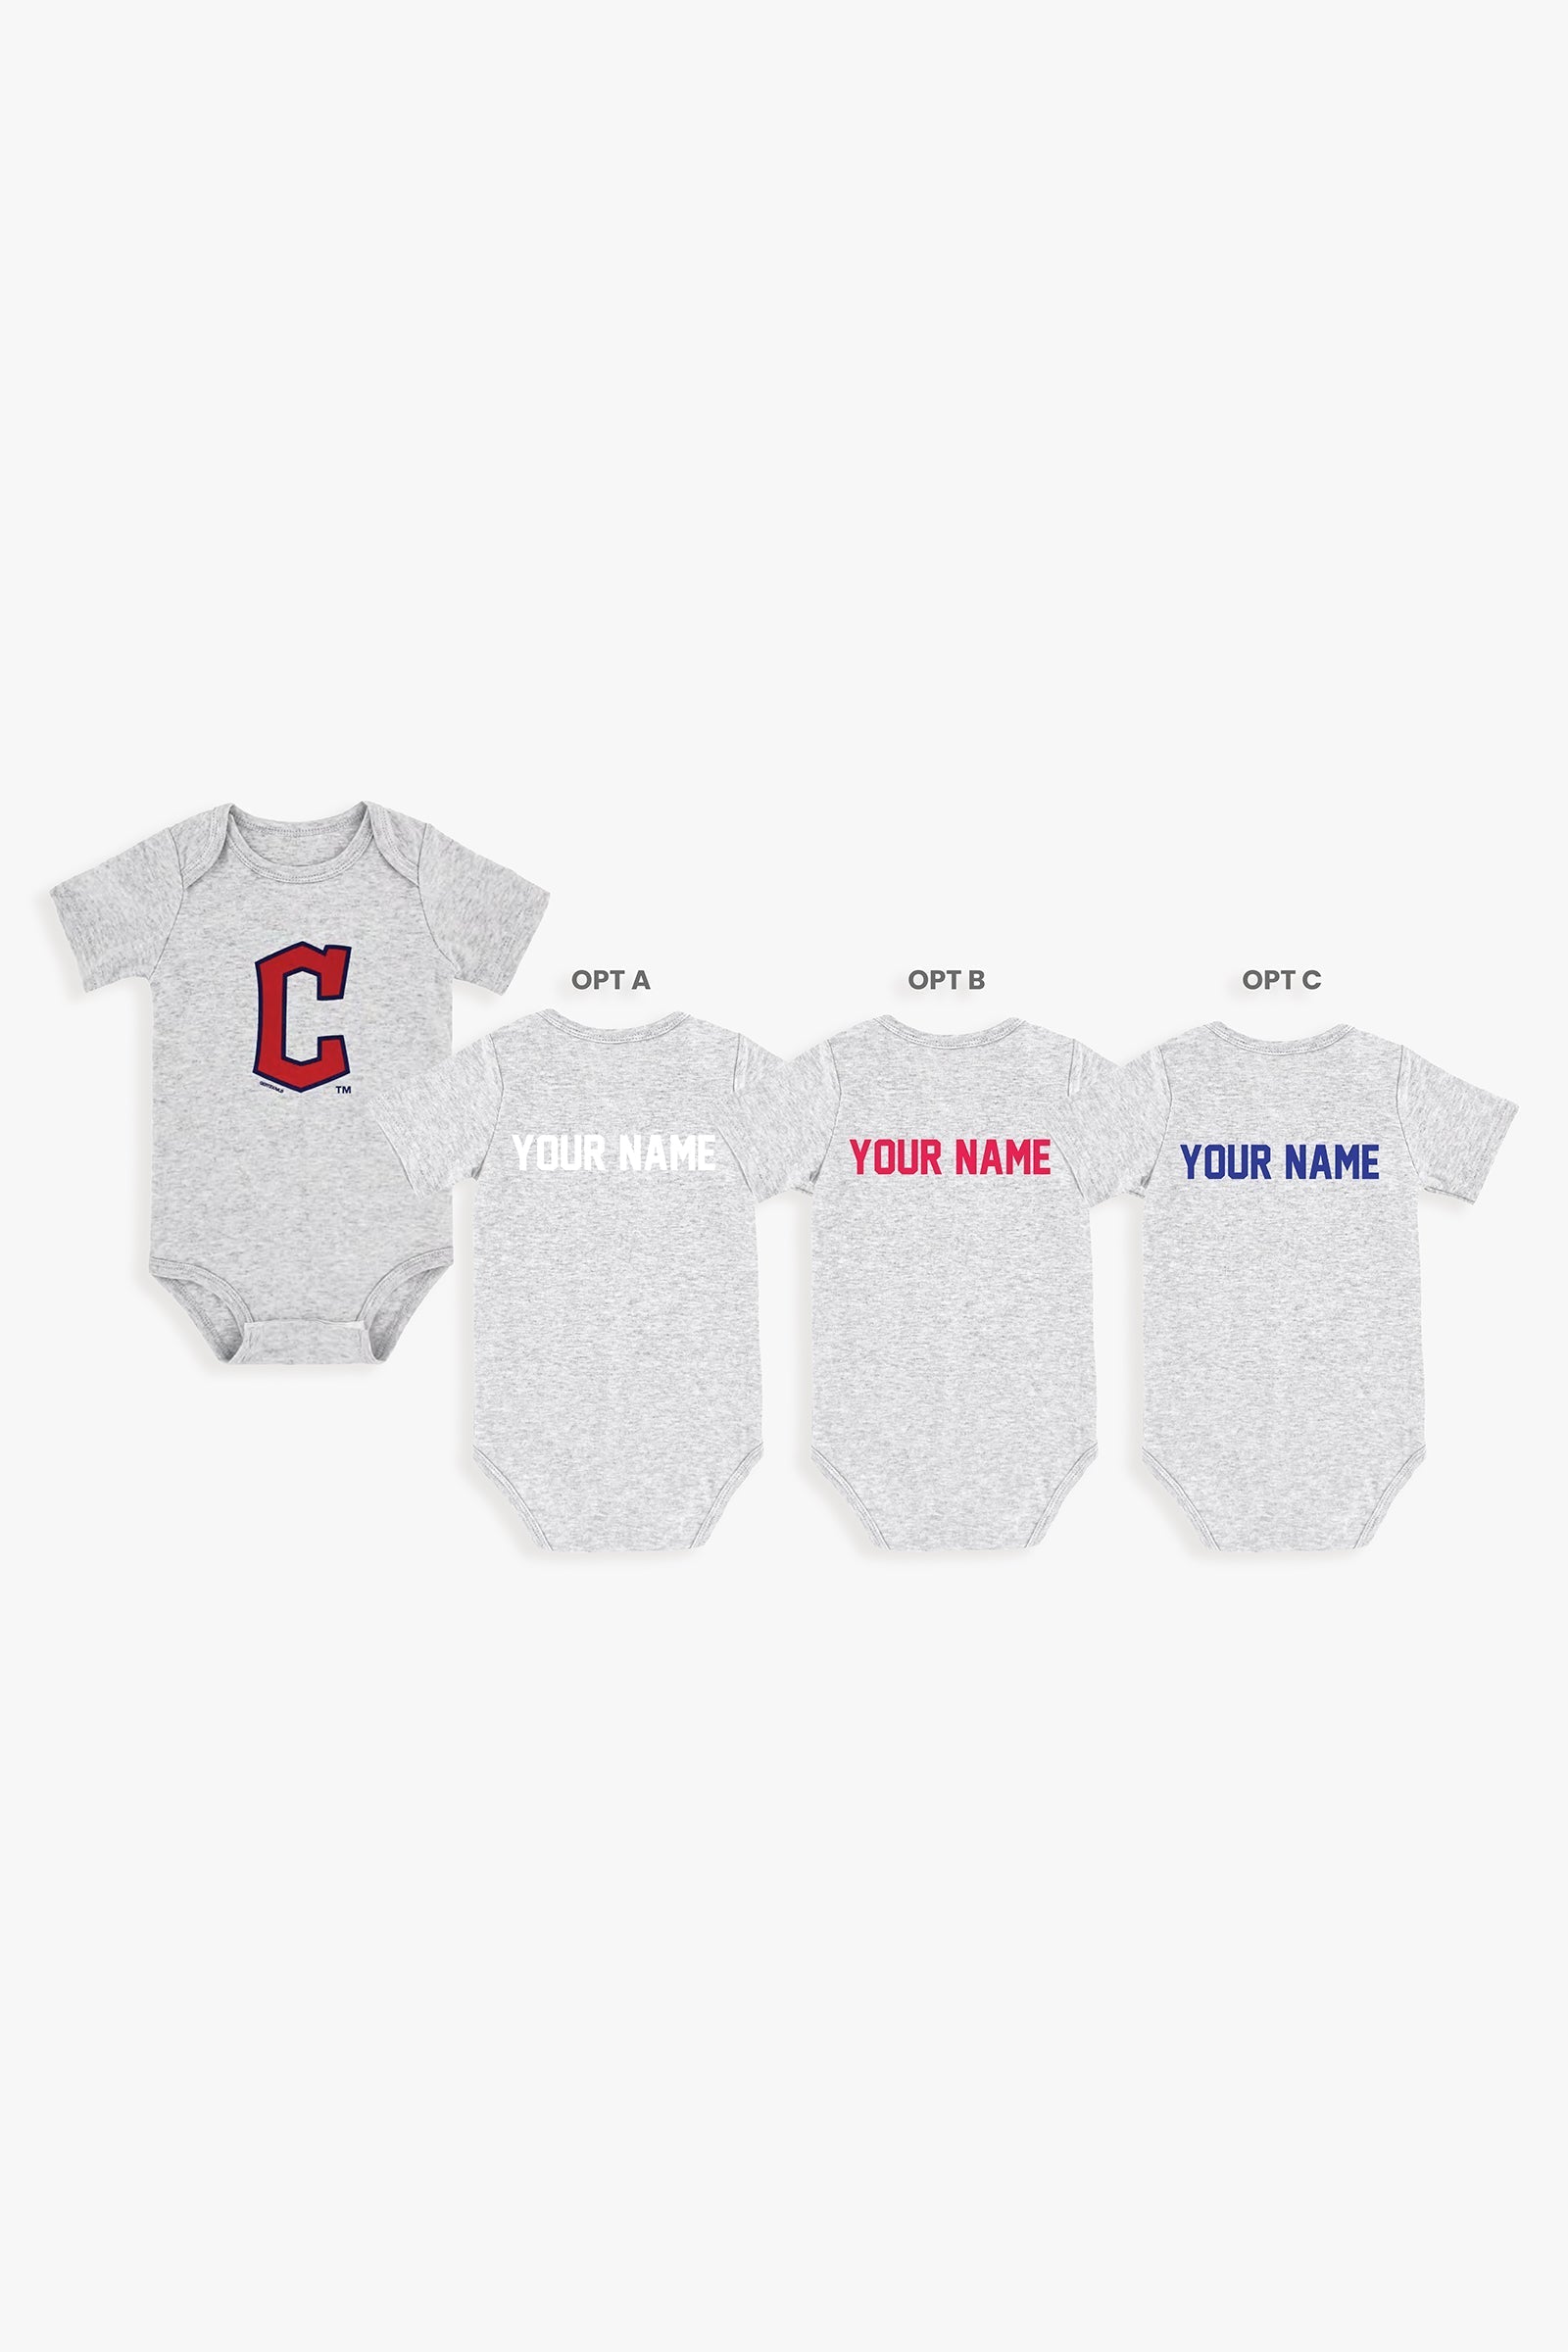 Customizable MLB Baby Onesie Bodysuit in Grey (12-18 Months)